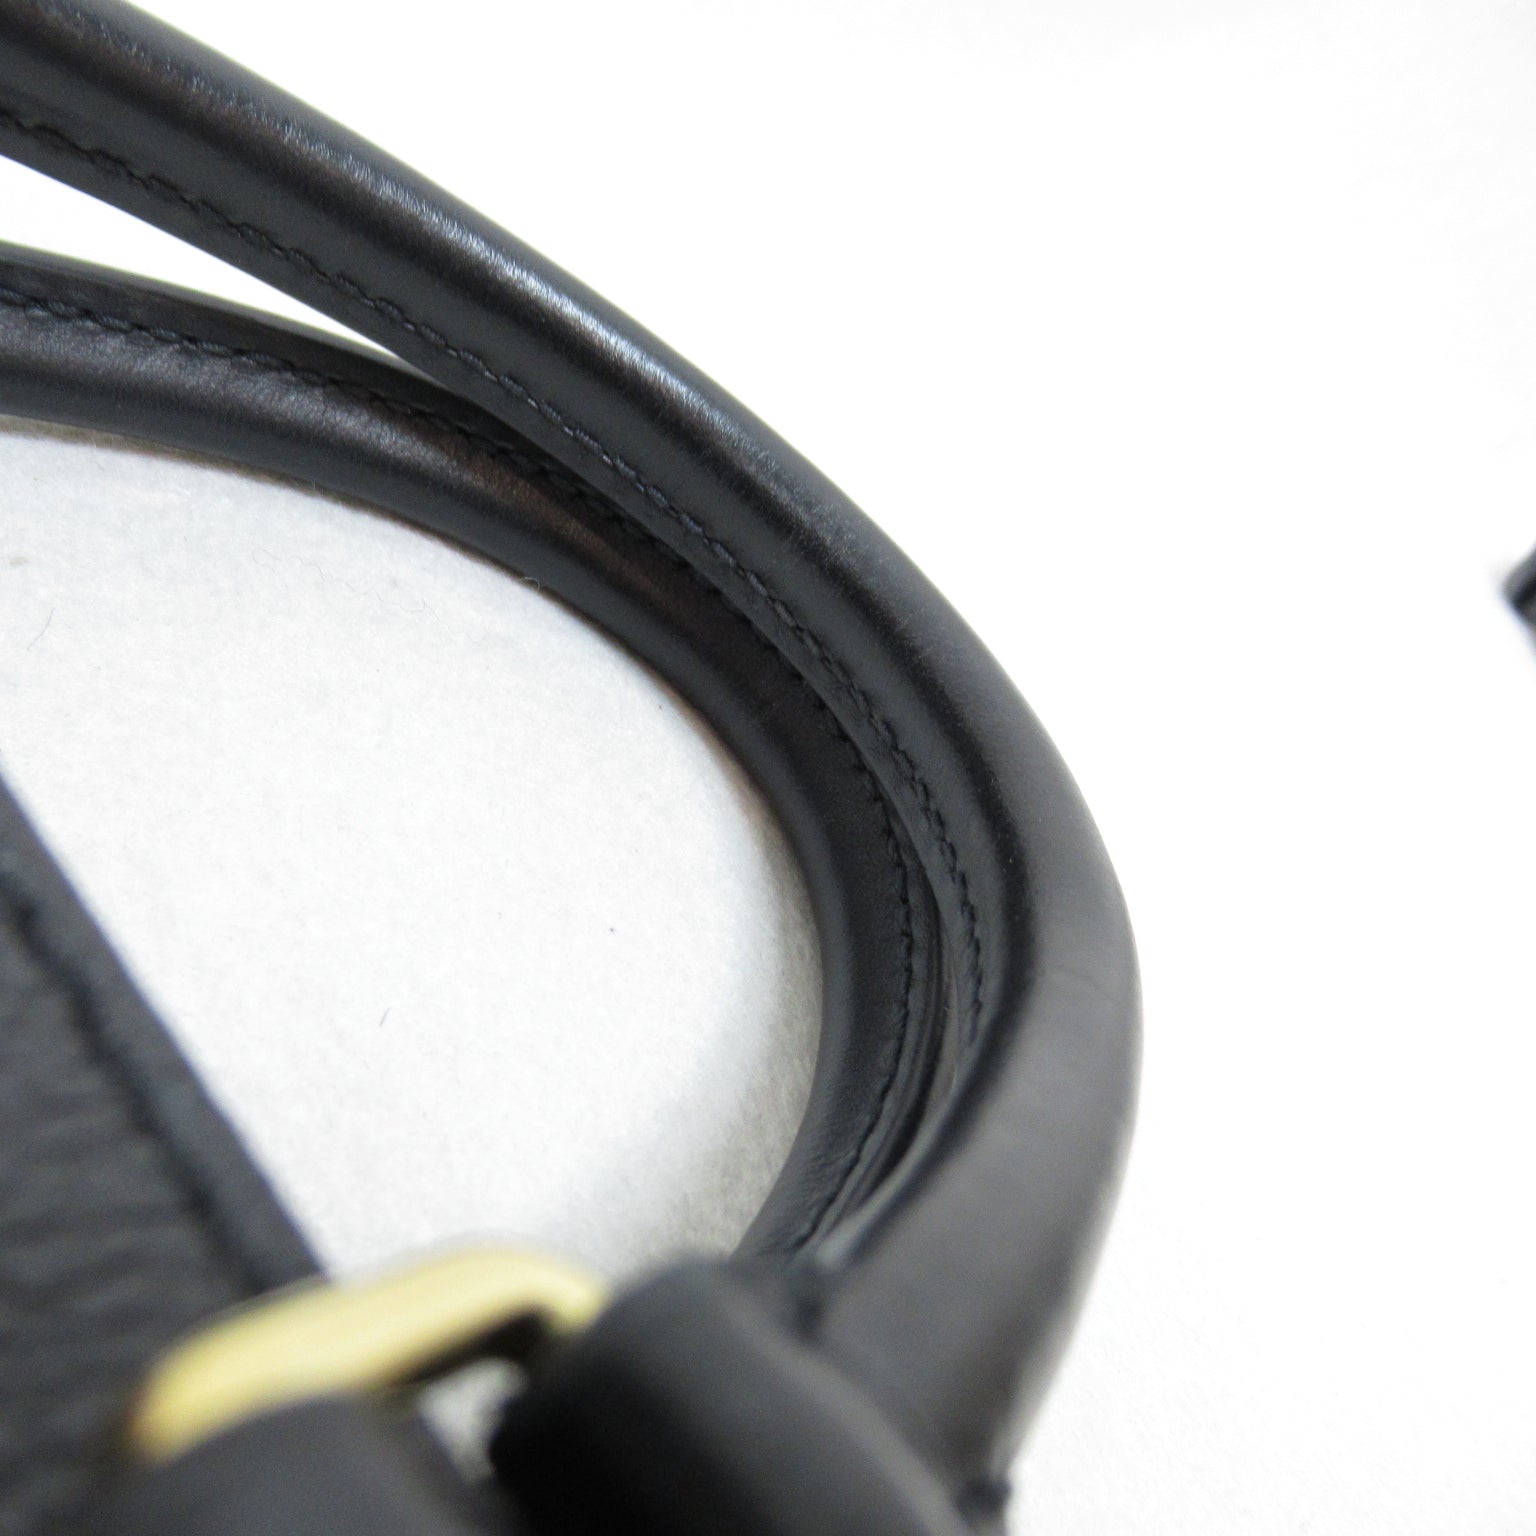 Louis Vuitton On The Go PM 2w Shoulder Bag 2way Shoulder Bag  Black M45653